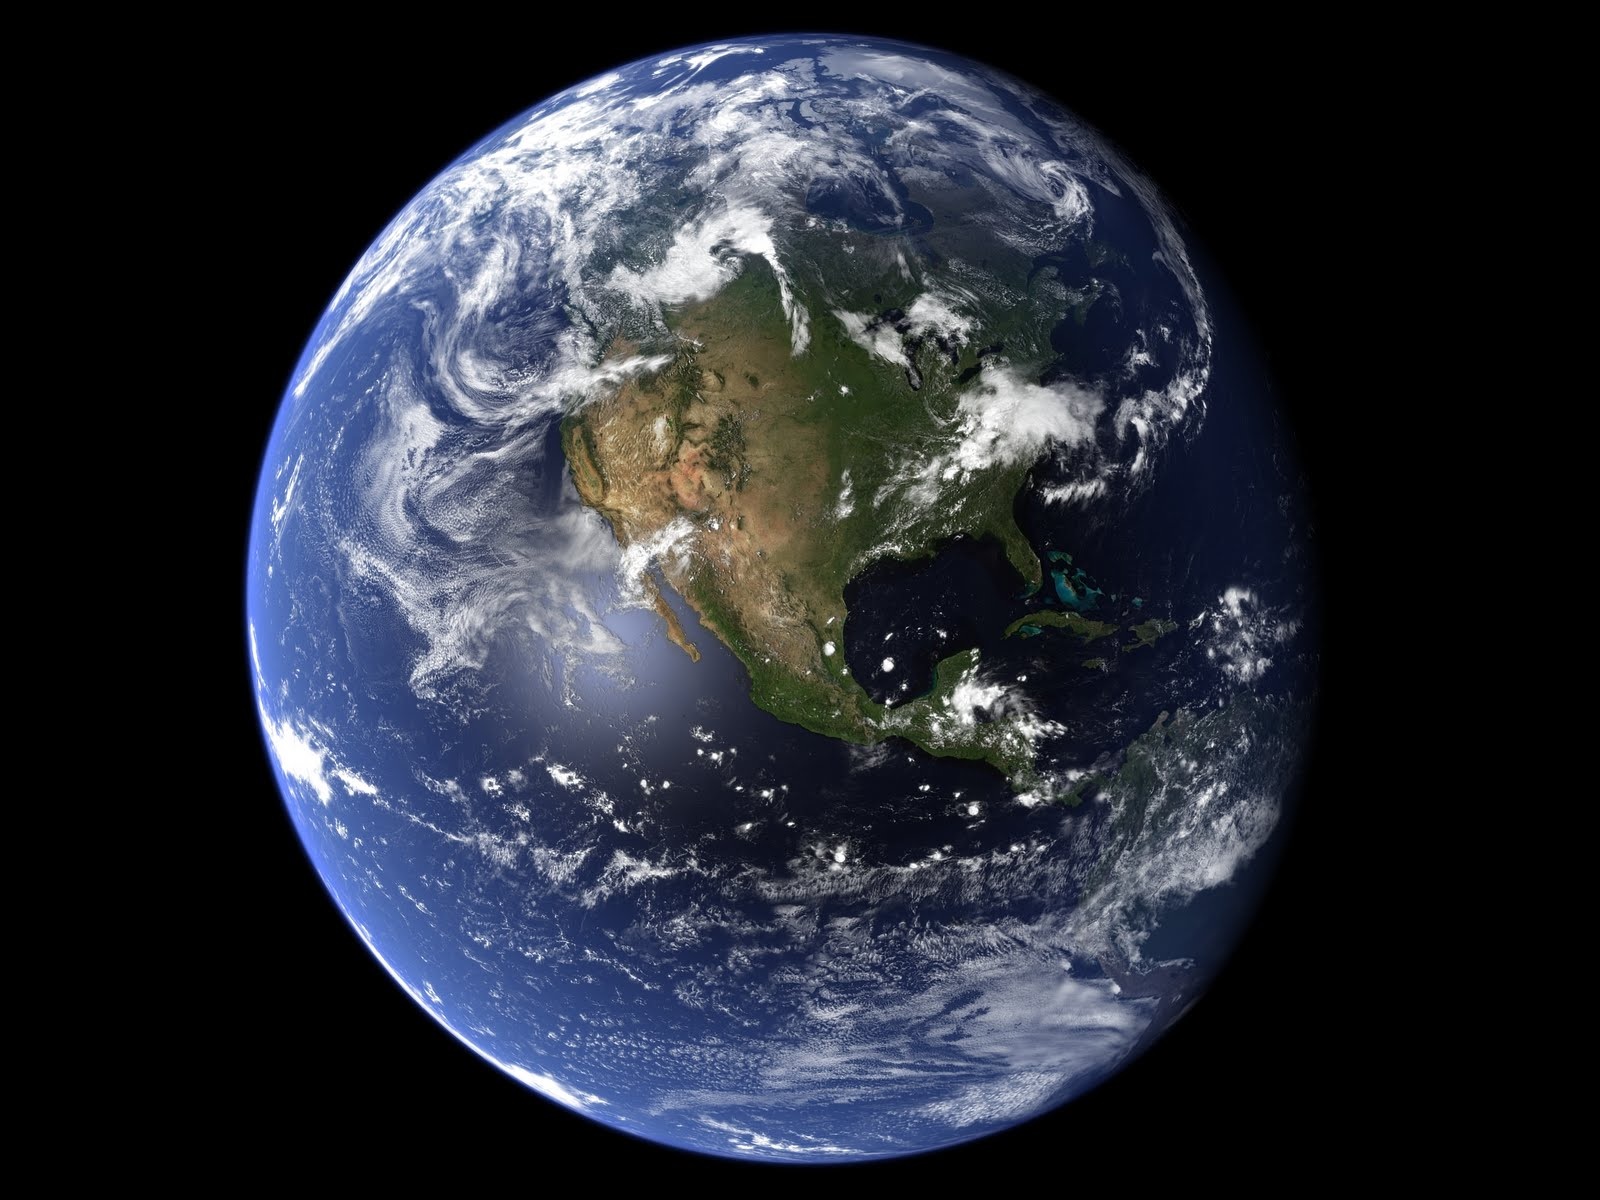 Được chụp bởi William Anders, tấm ảnh Earthrise đã góp phần thay đổi cách nhìn của chúng ta về vũ trụ. Hãy xem tấm ảnh này để cảm nhận vẻ đẹp kỳ diệu của Trái Đất khi nhìn từ ngoài không gian.